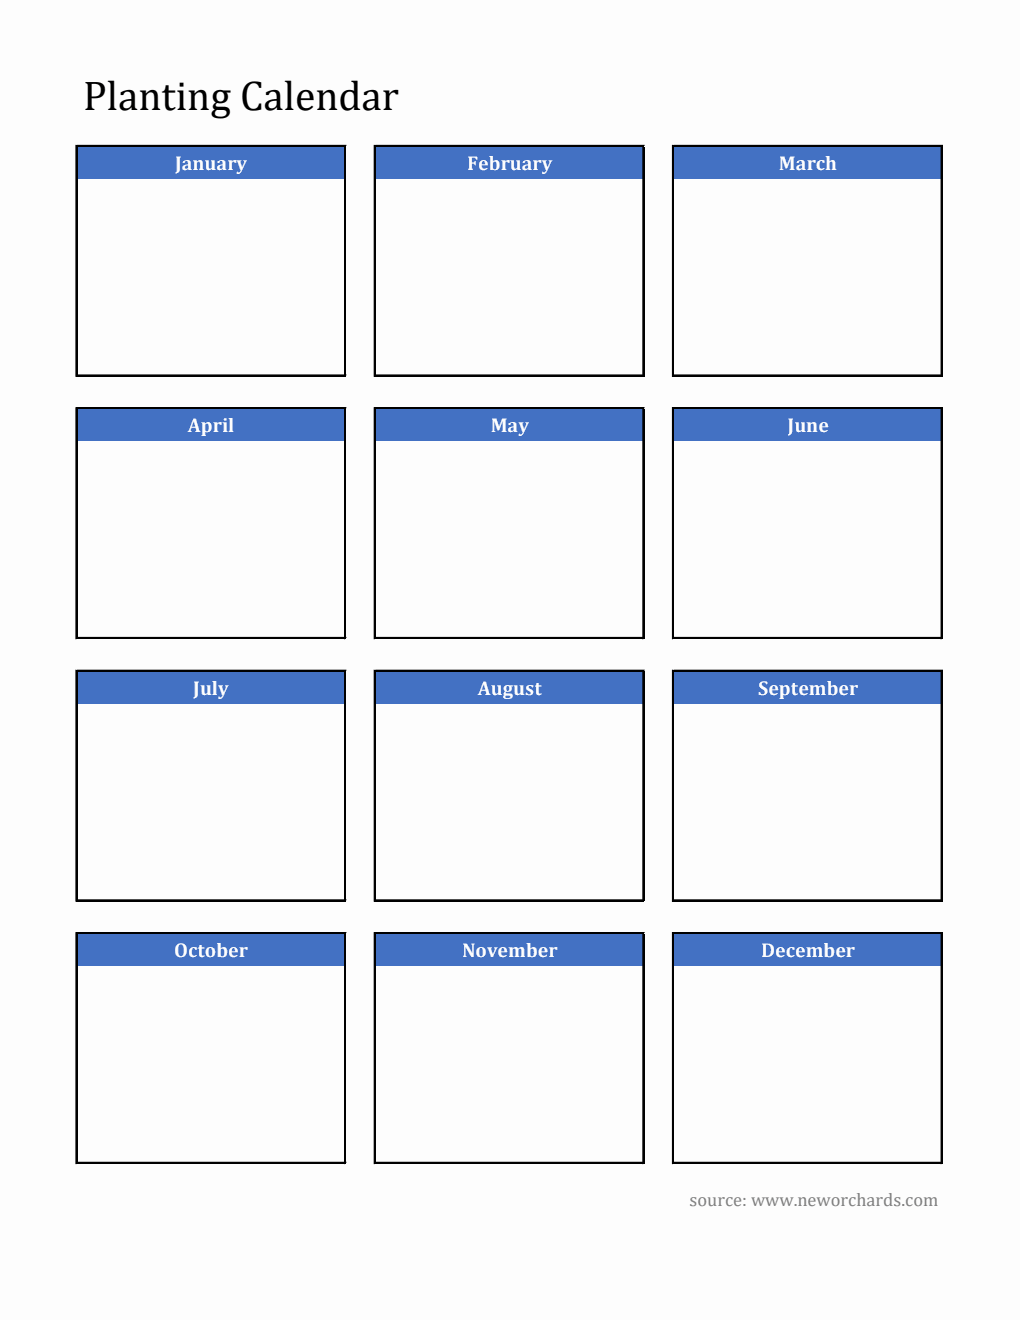 Blank Planting Calendar in Excel